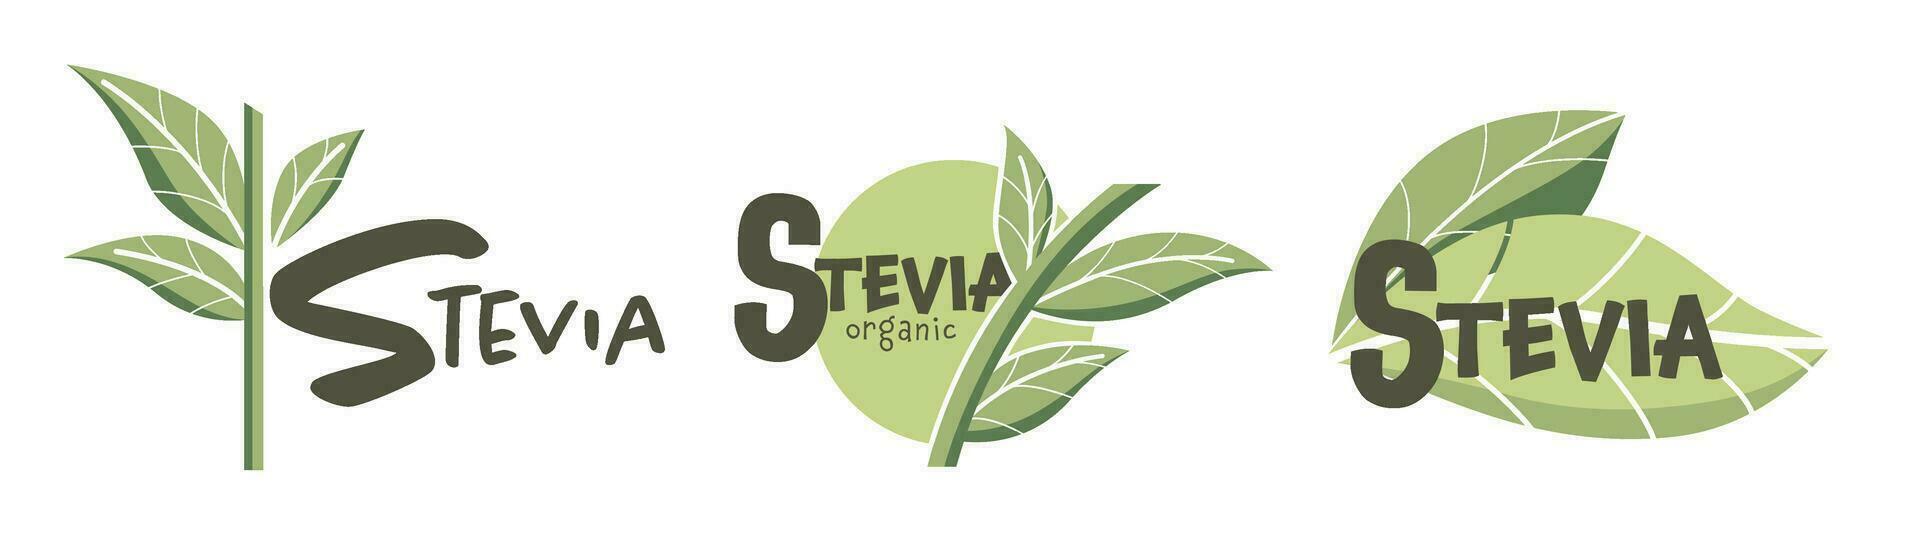 Stevia biologico e naturale dolcificante, logotipi vettore